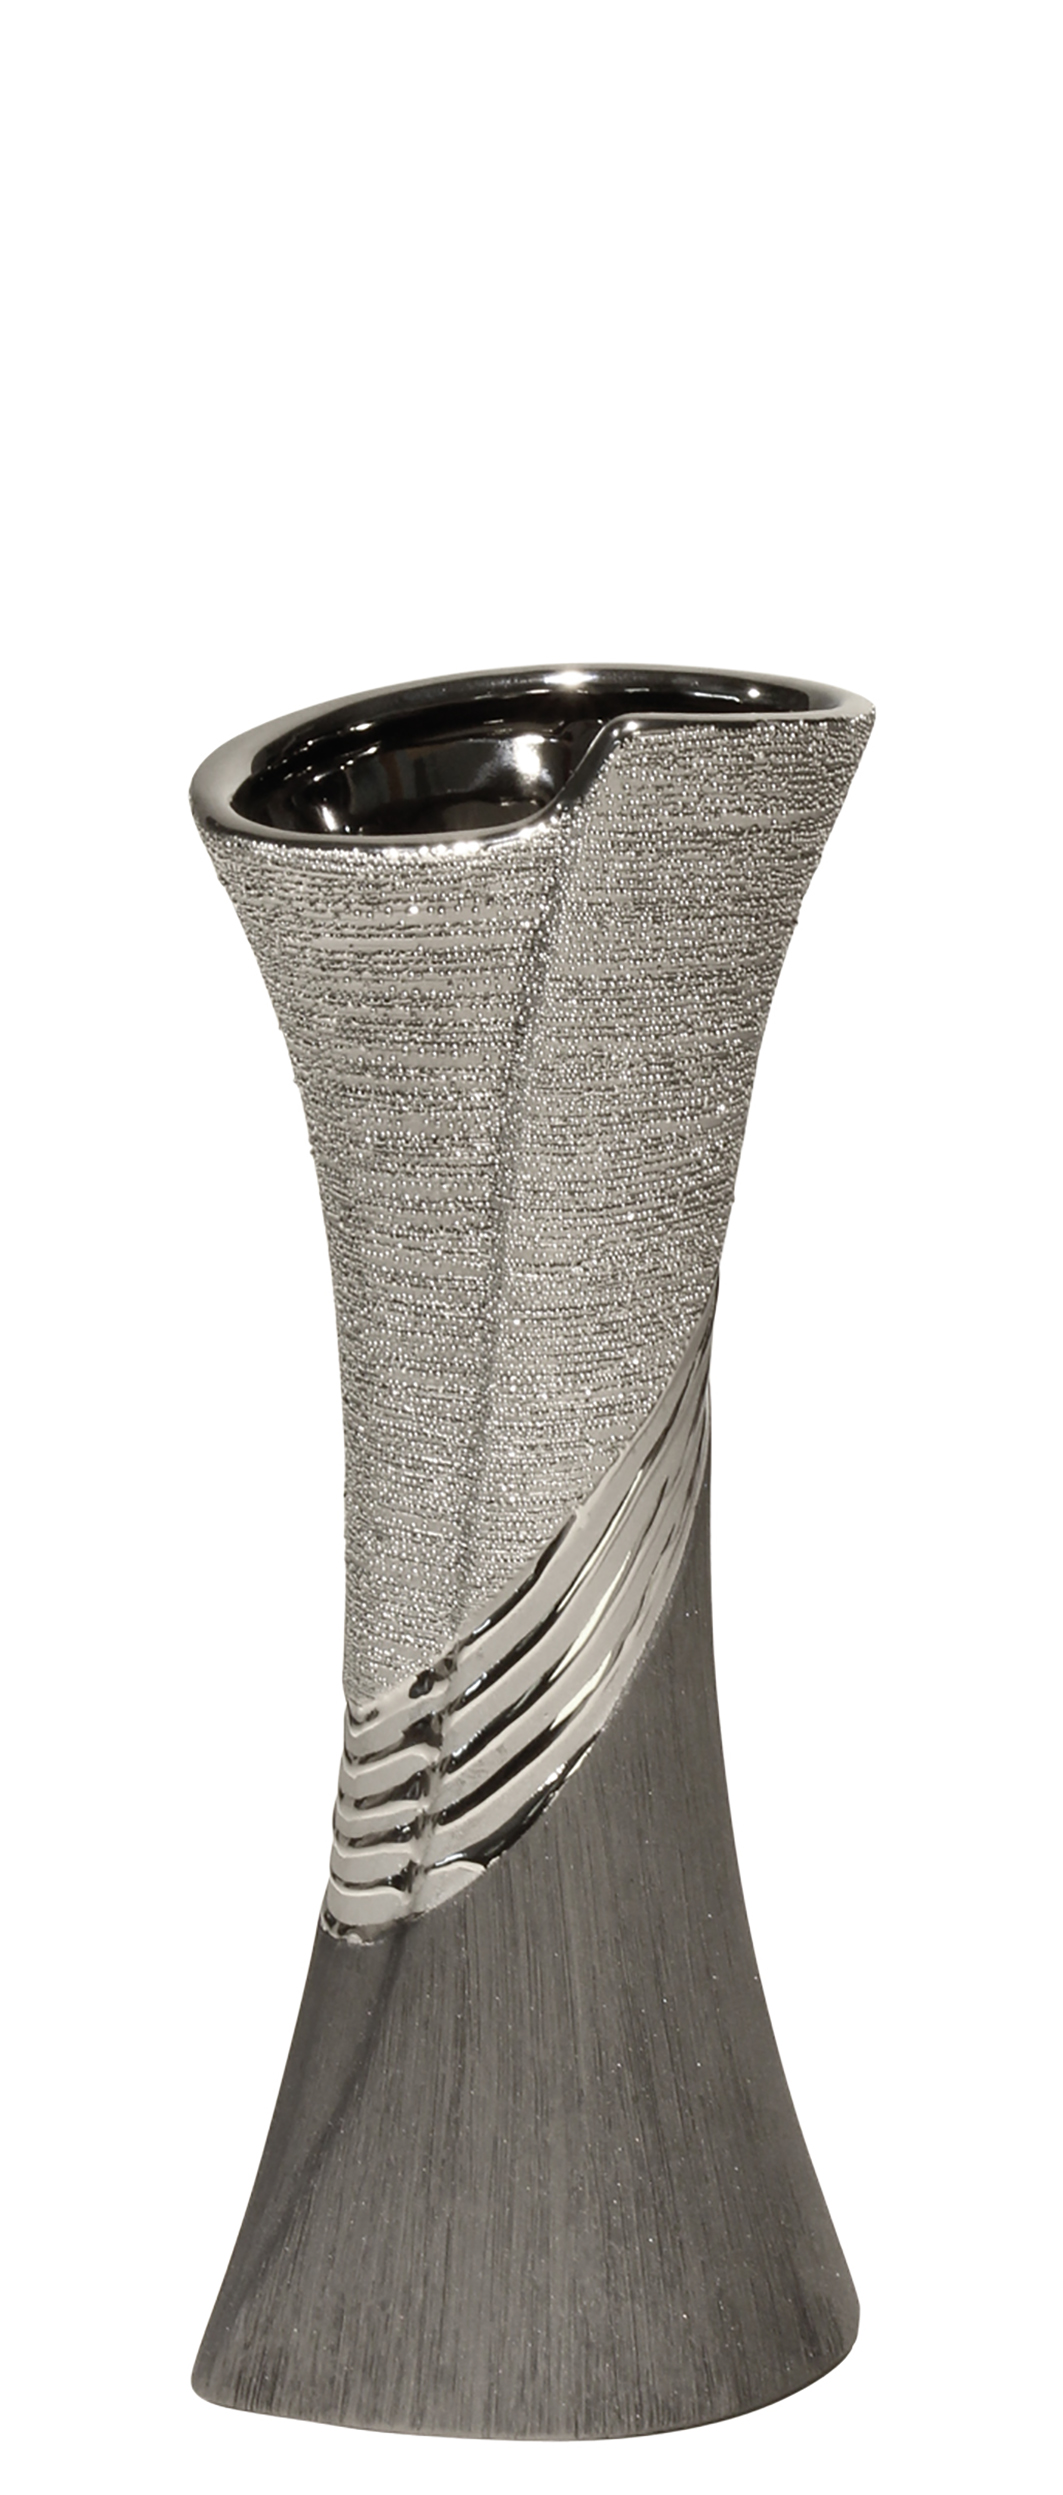 Moderne Dekovase Blumenvase Tischvase Vase aus Keramik schwarz/silber 14x16 cm 